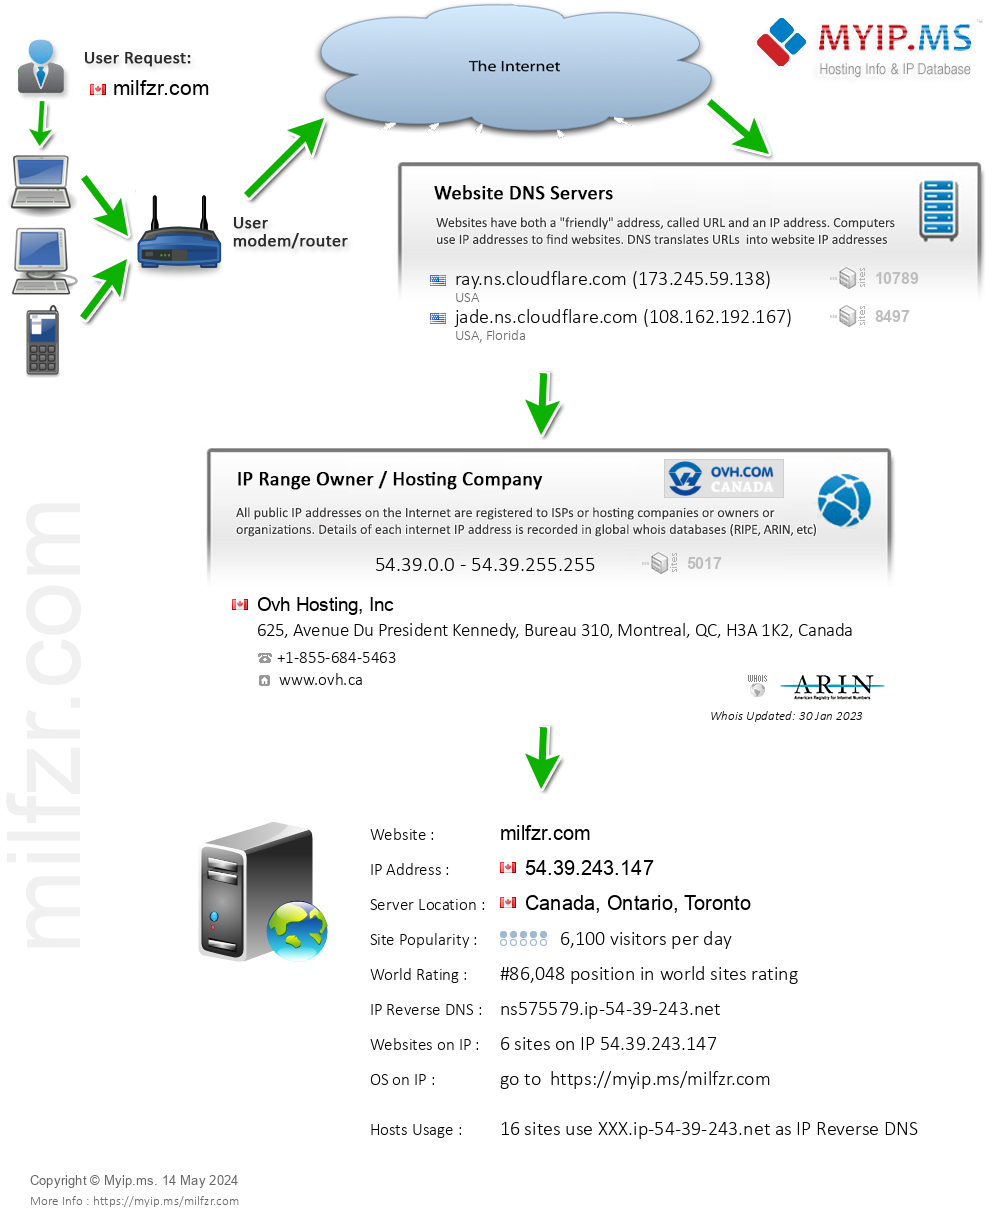 Milfzr.com - Website Hosting Visual IP Diagram